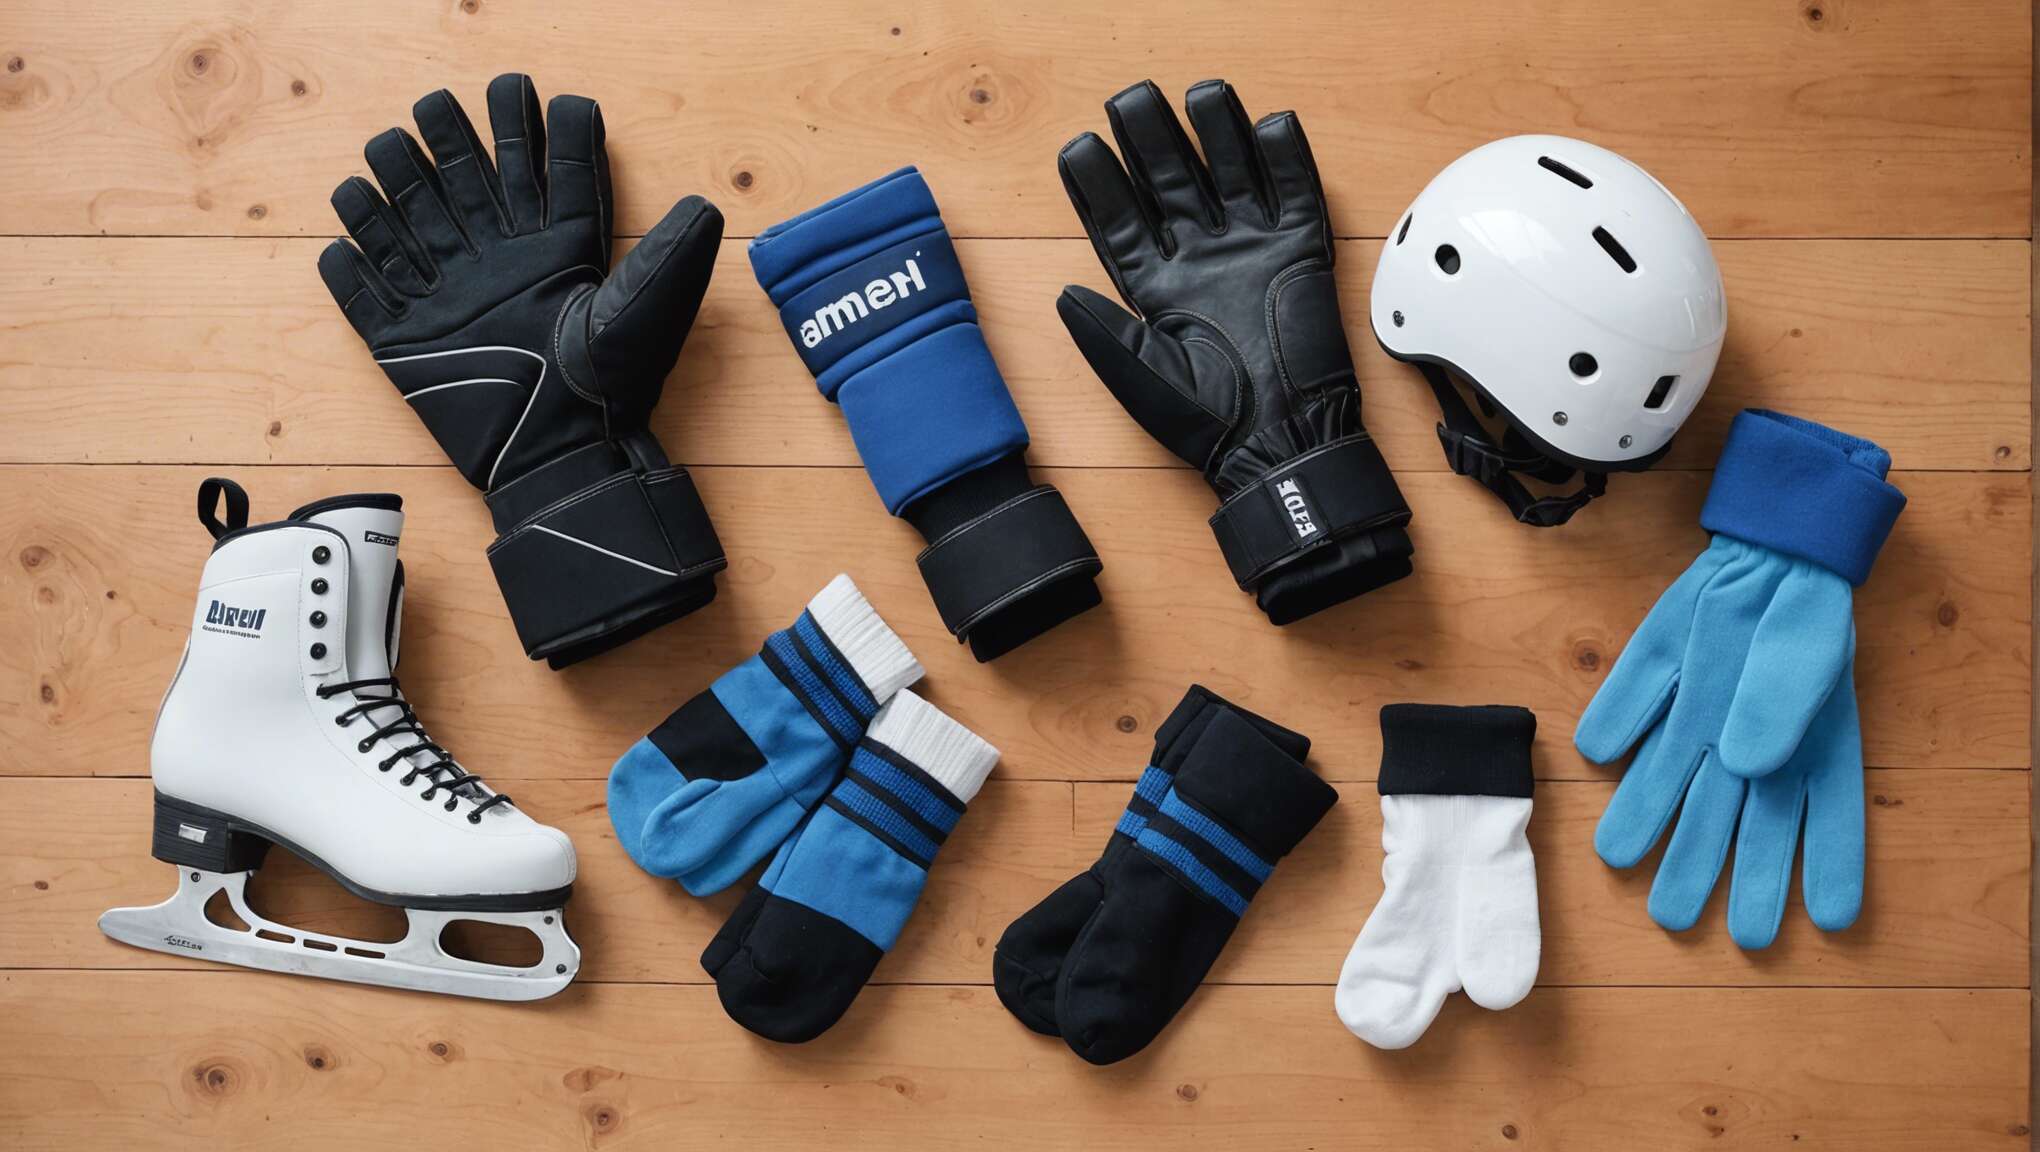 Accessoires indispensables : gants, chaussettes et protections pour un confort accru